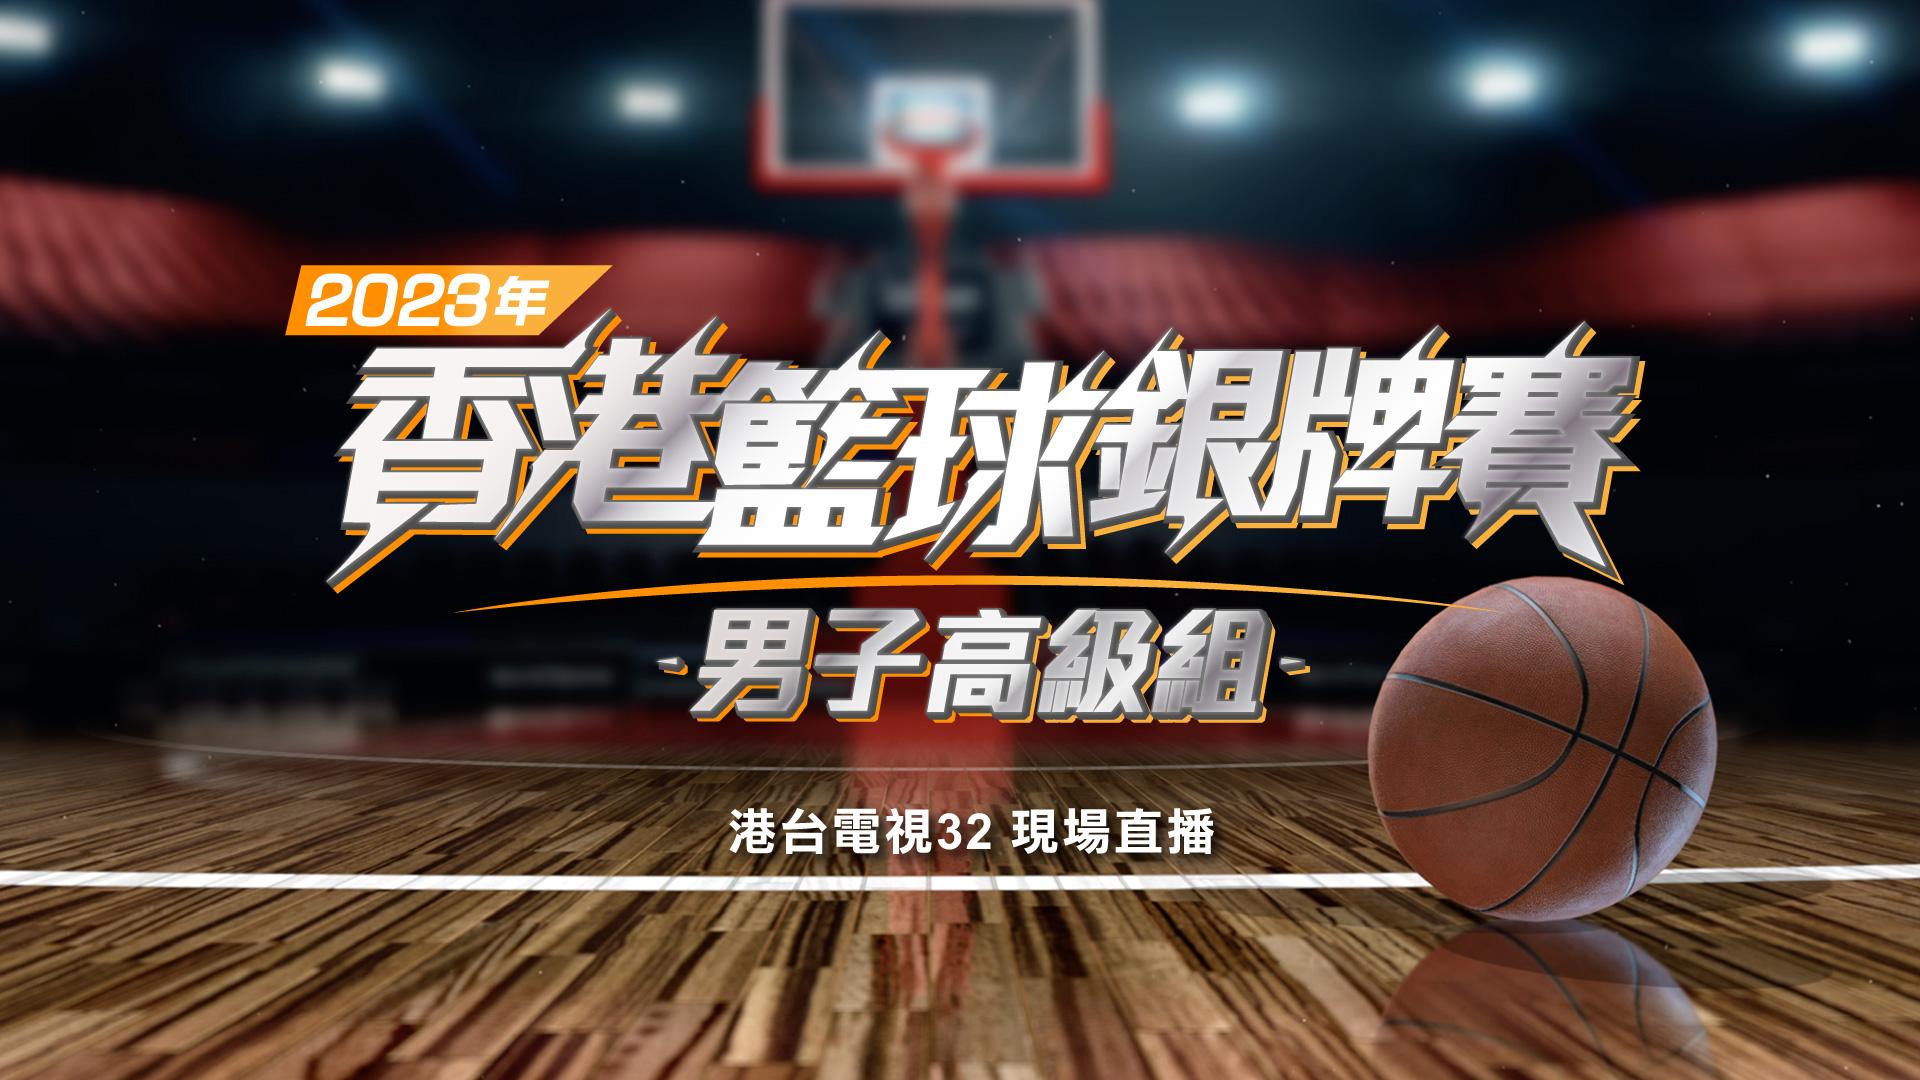 2023年香港籃球銀牌賽 (男子高級組)決賽